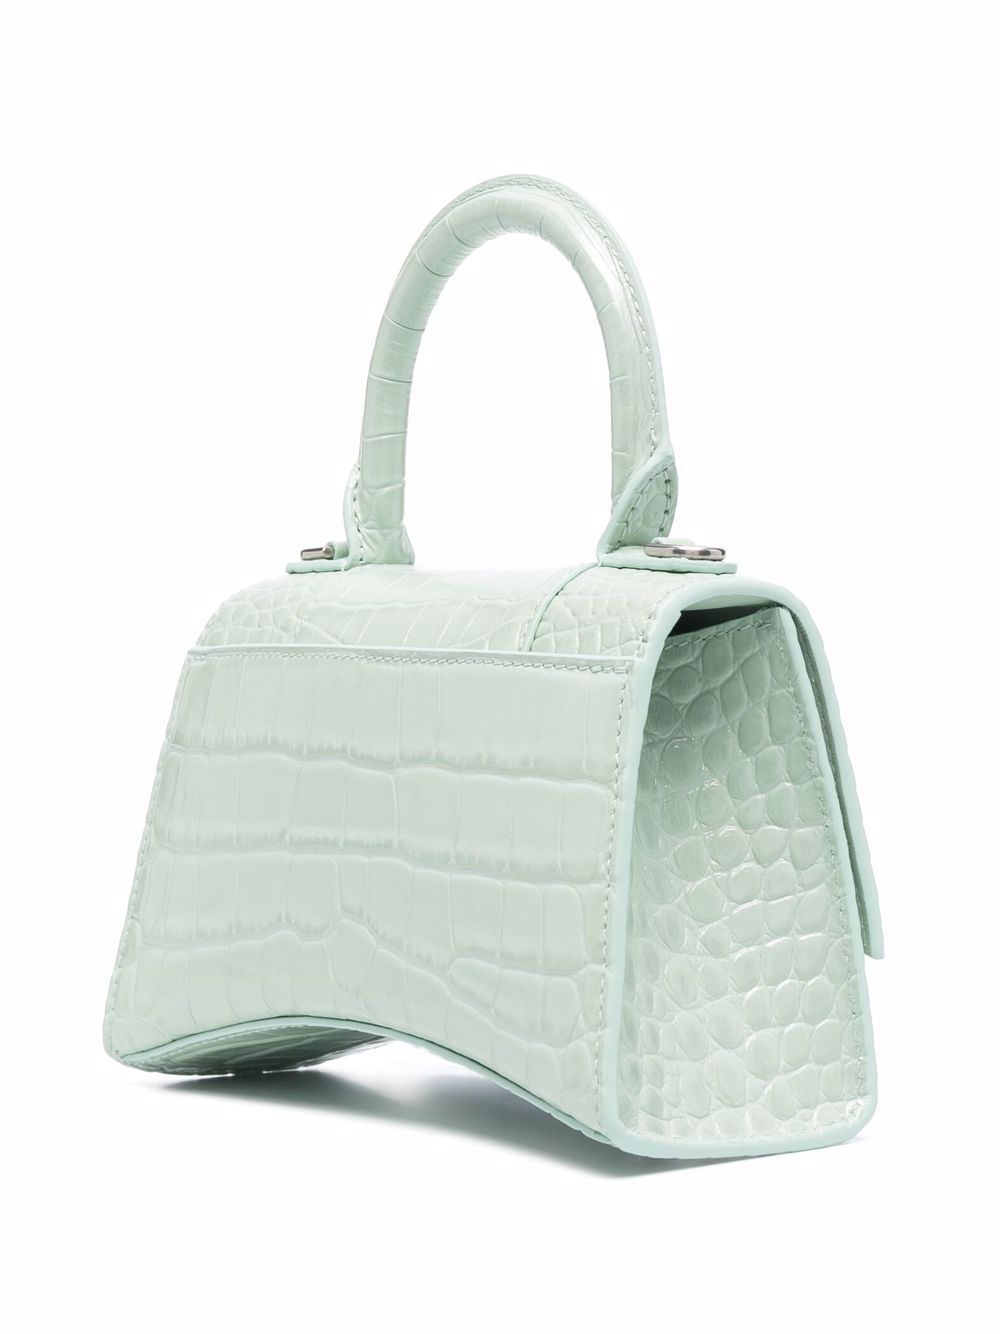 фото Balenciaga сумка-тоут hourglass с тиснением под кожу крокодила